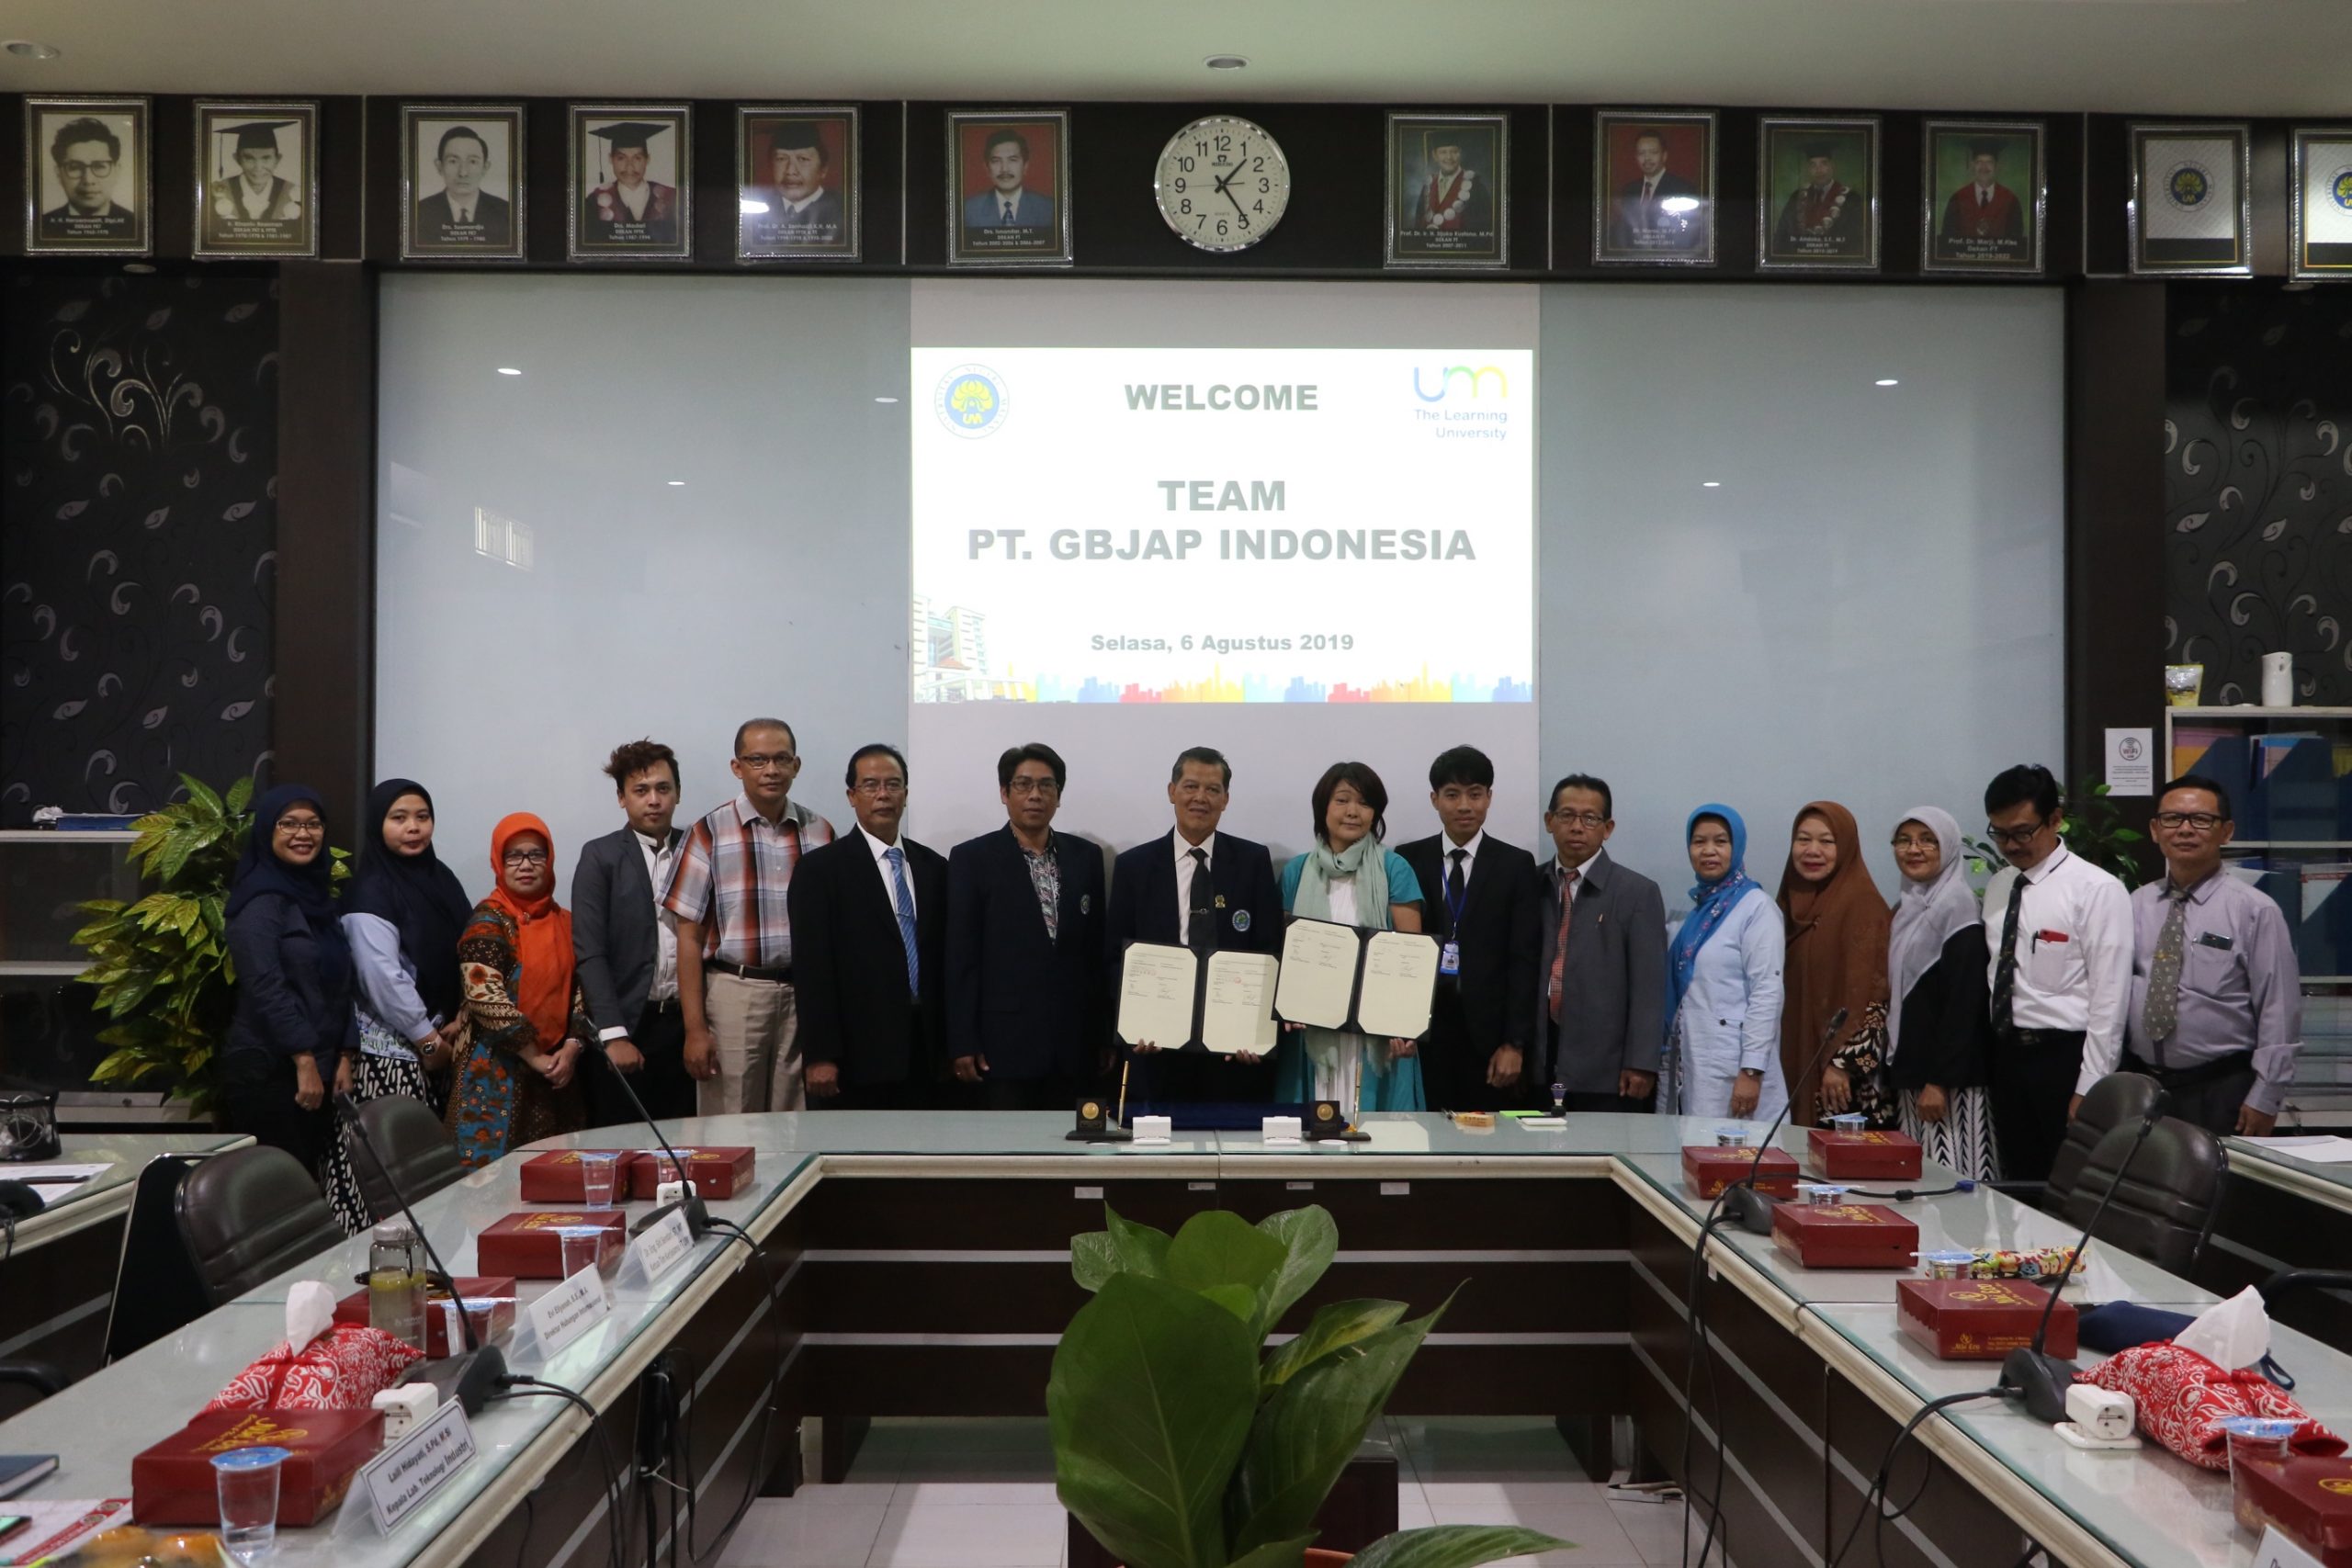 Kunjungan Program Kerjasama dari PT. GBJAP Indonesia Nusantara di Fakultas Teknik UM